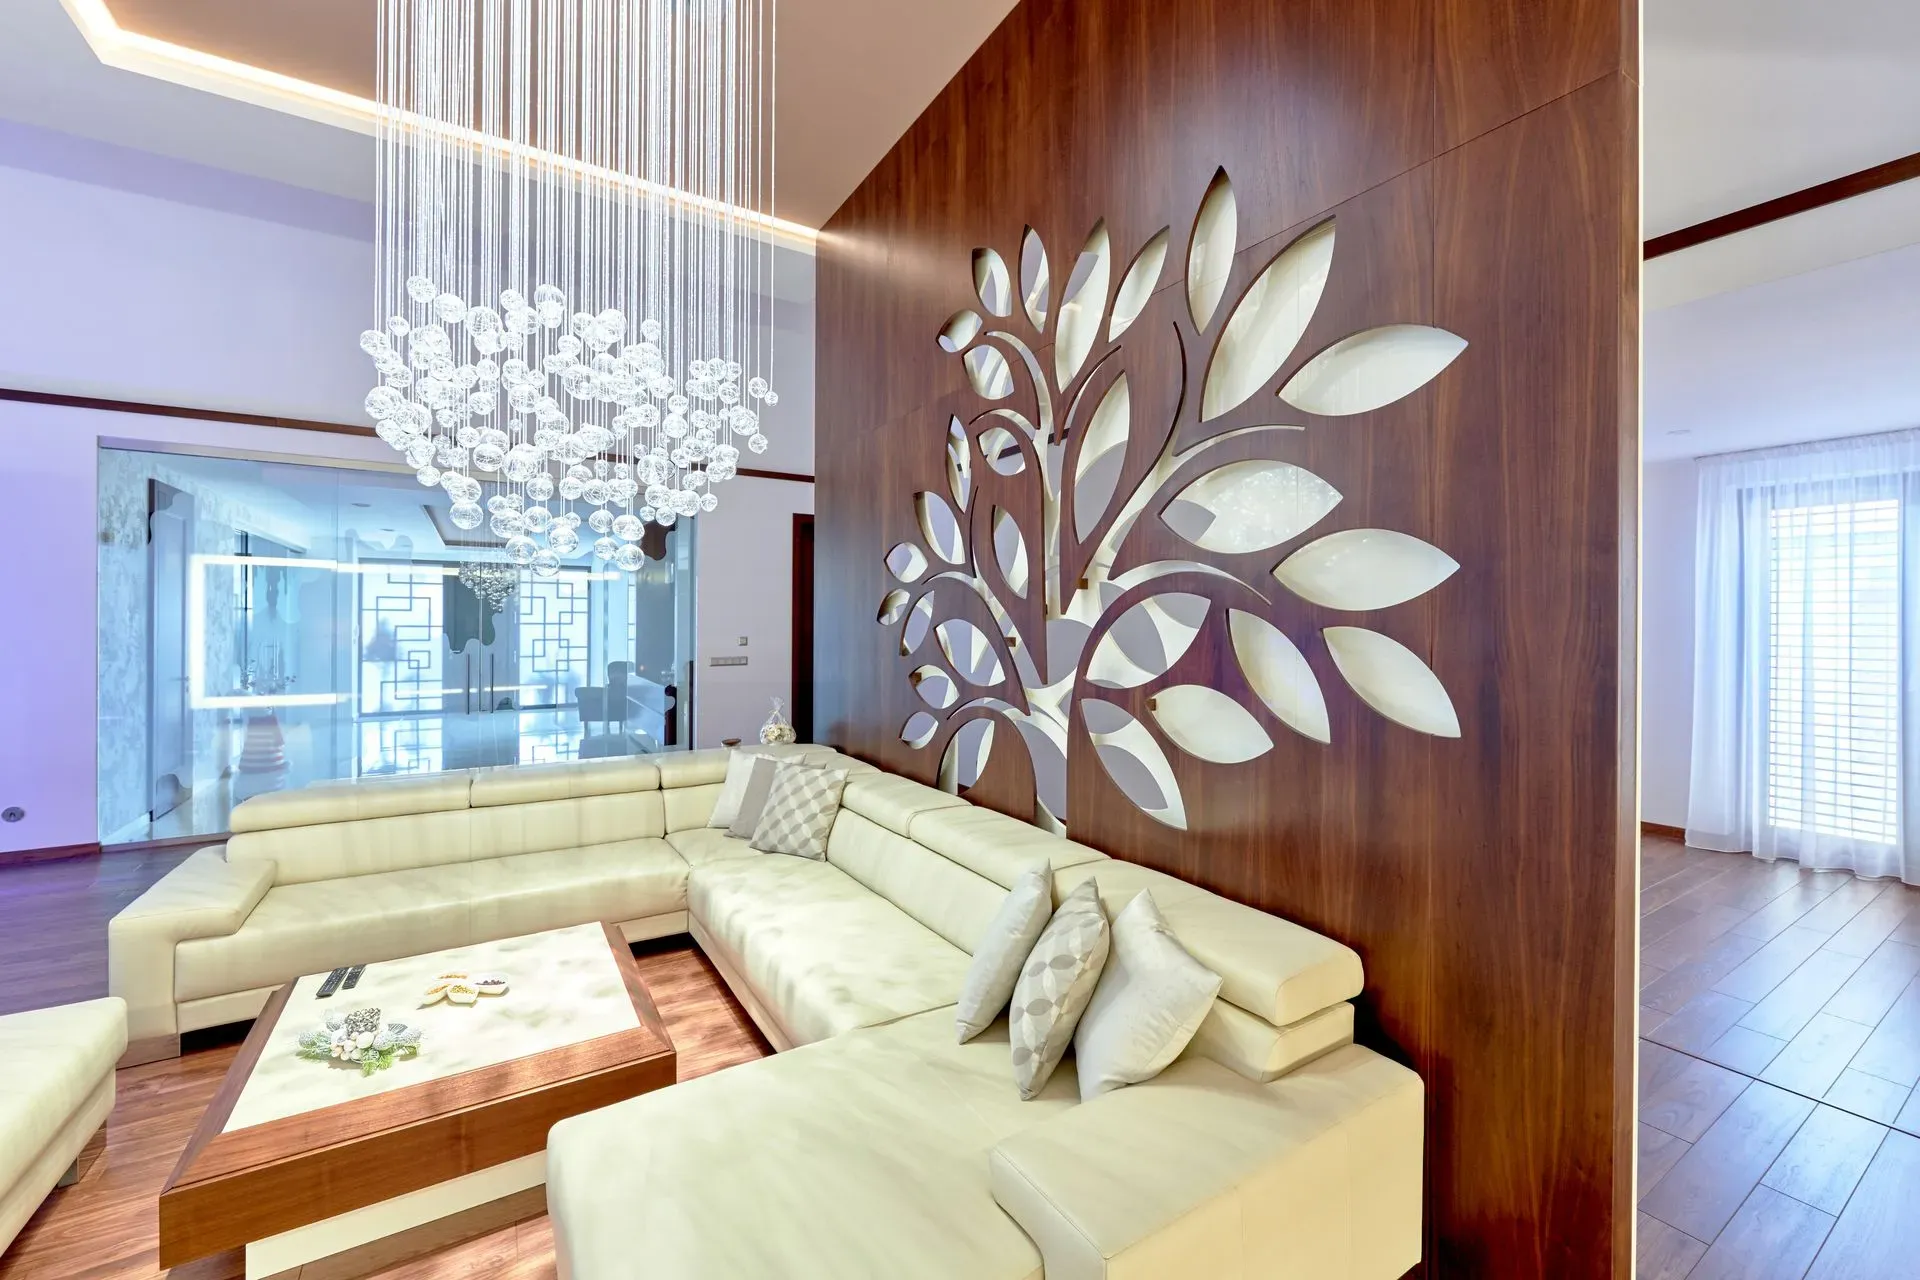 Luxury livingroom light chandelier custom made fibre optic lighting